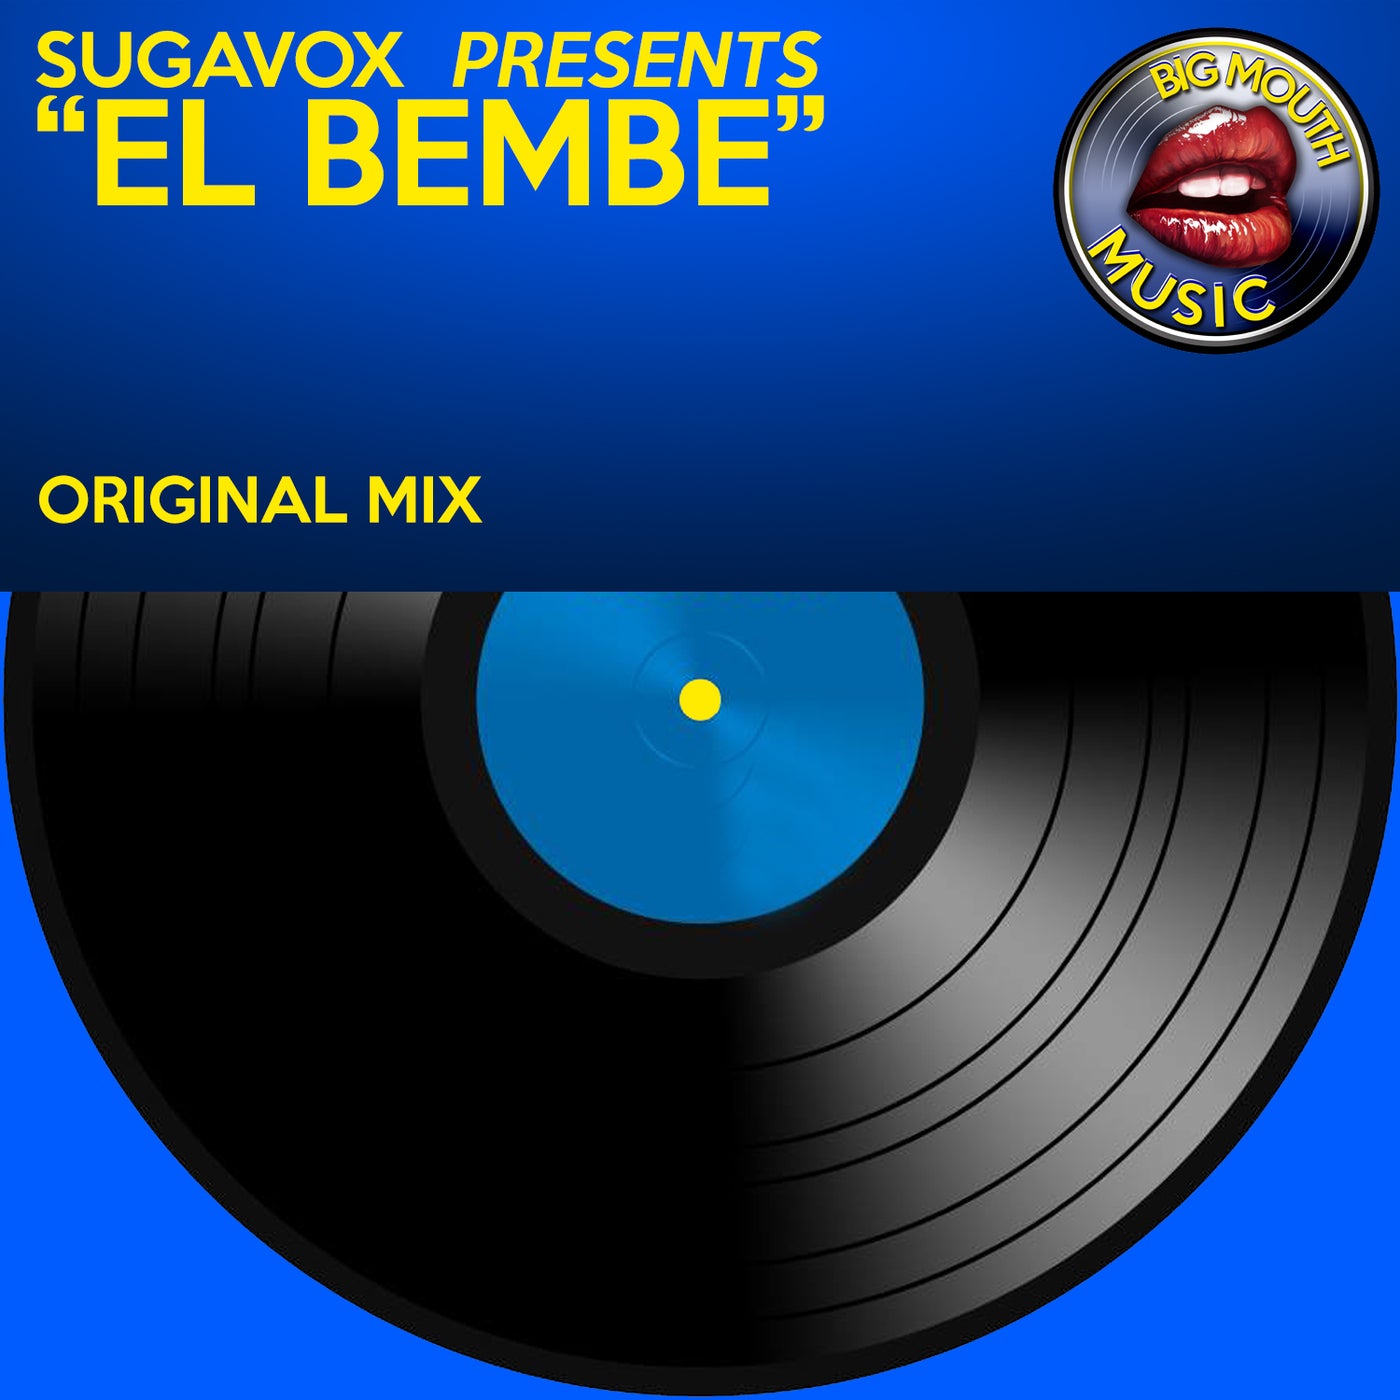 Sugavox Presents El Bembe